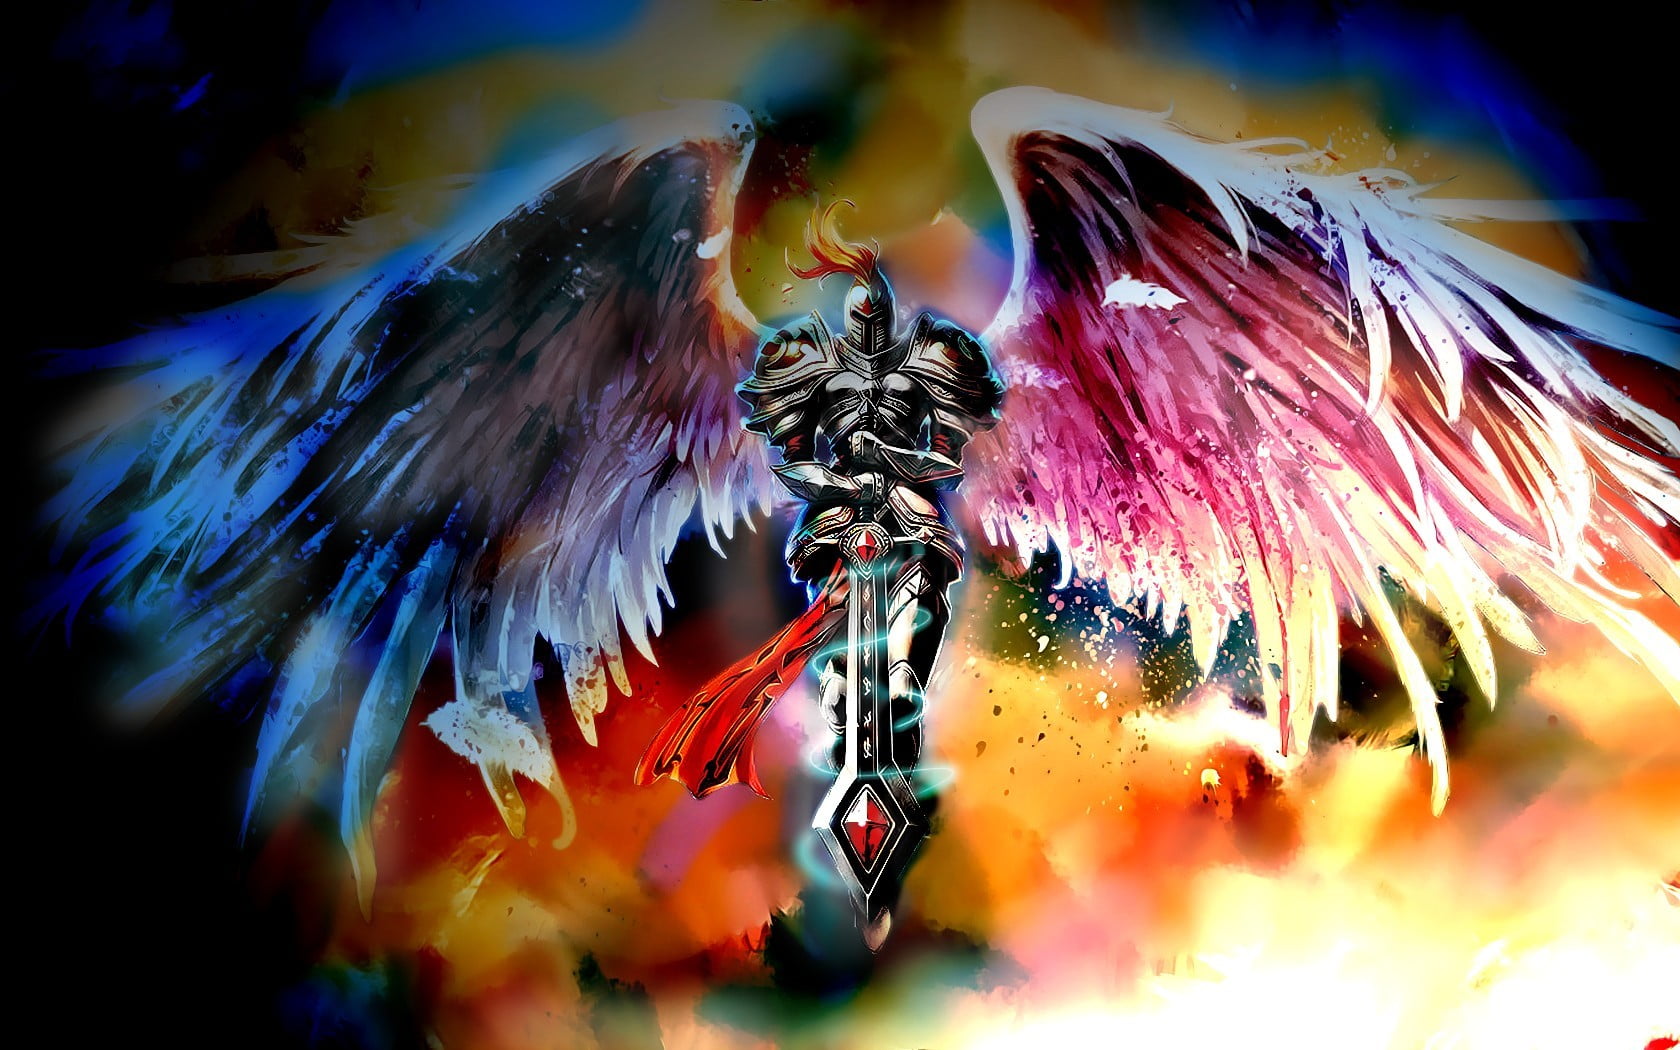 angel wearing knight armor holding sword digital wallpaper, League of Legends